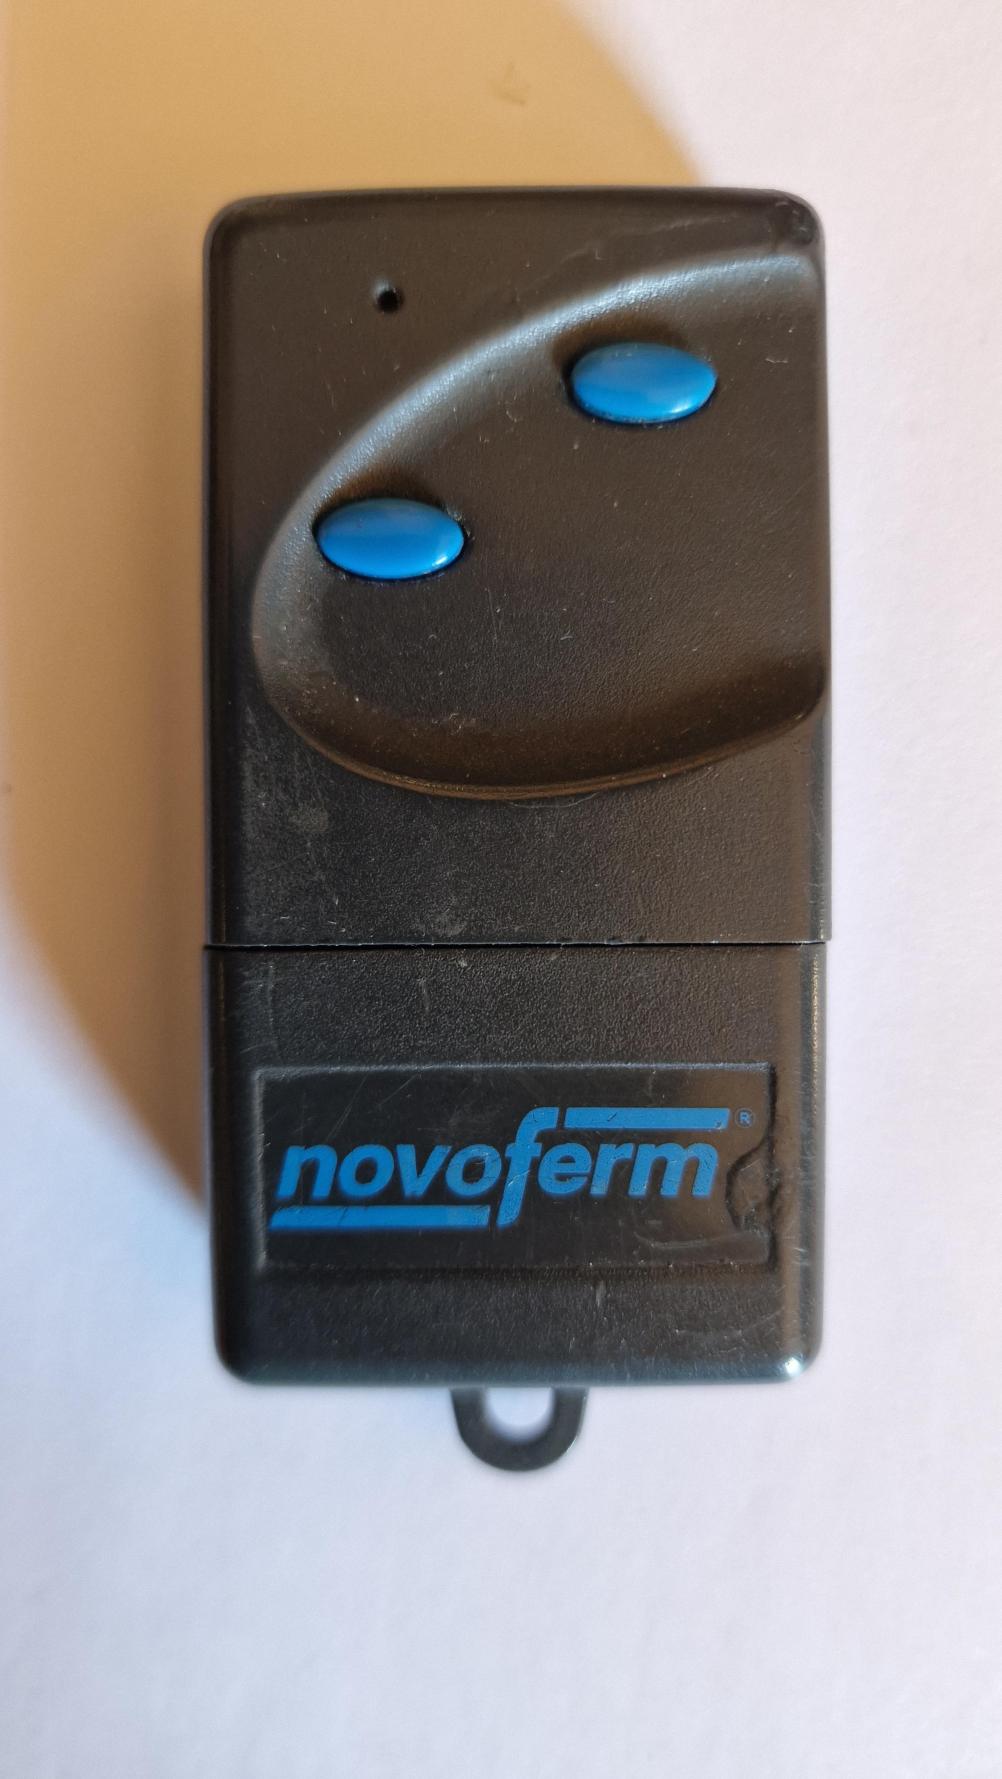 Novoferm novotron 302 Remote Control - Front Image